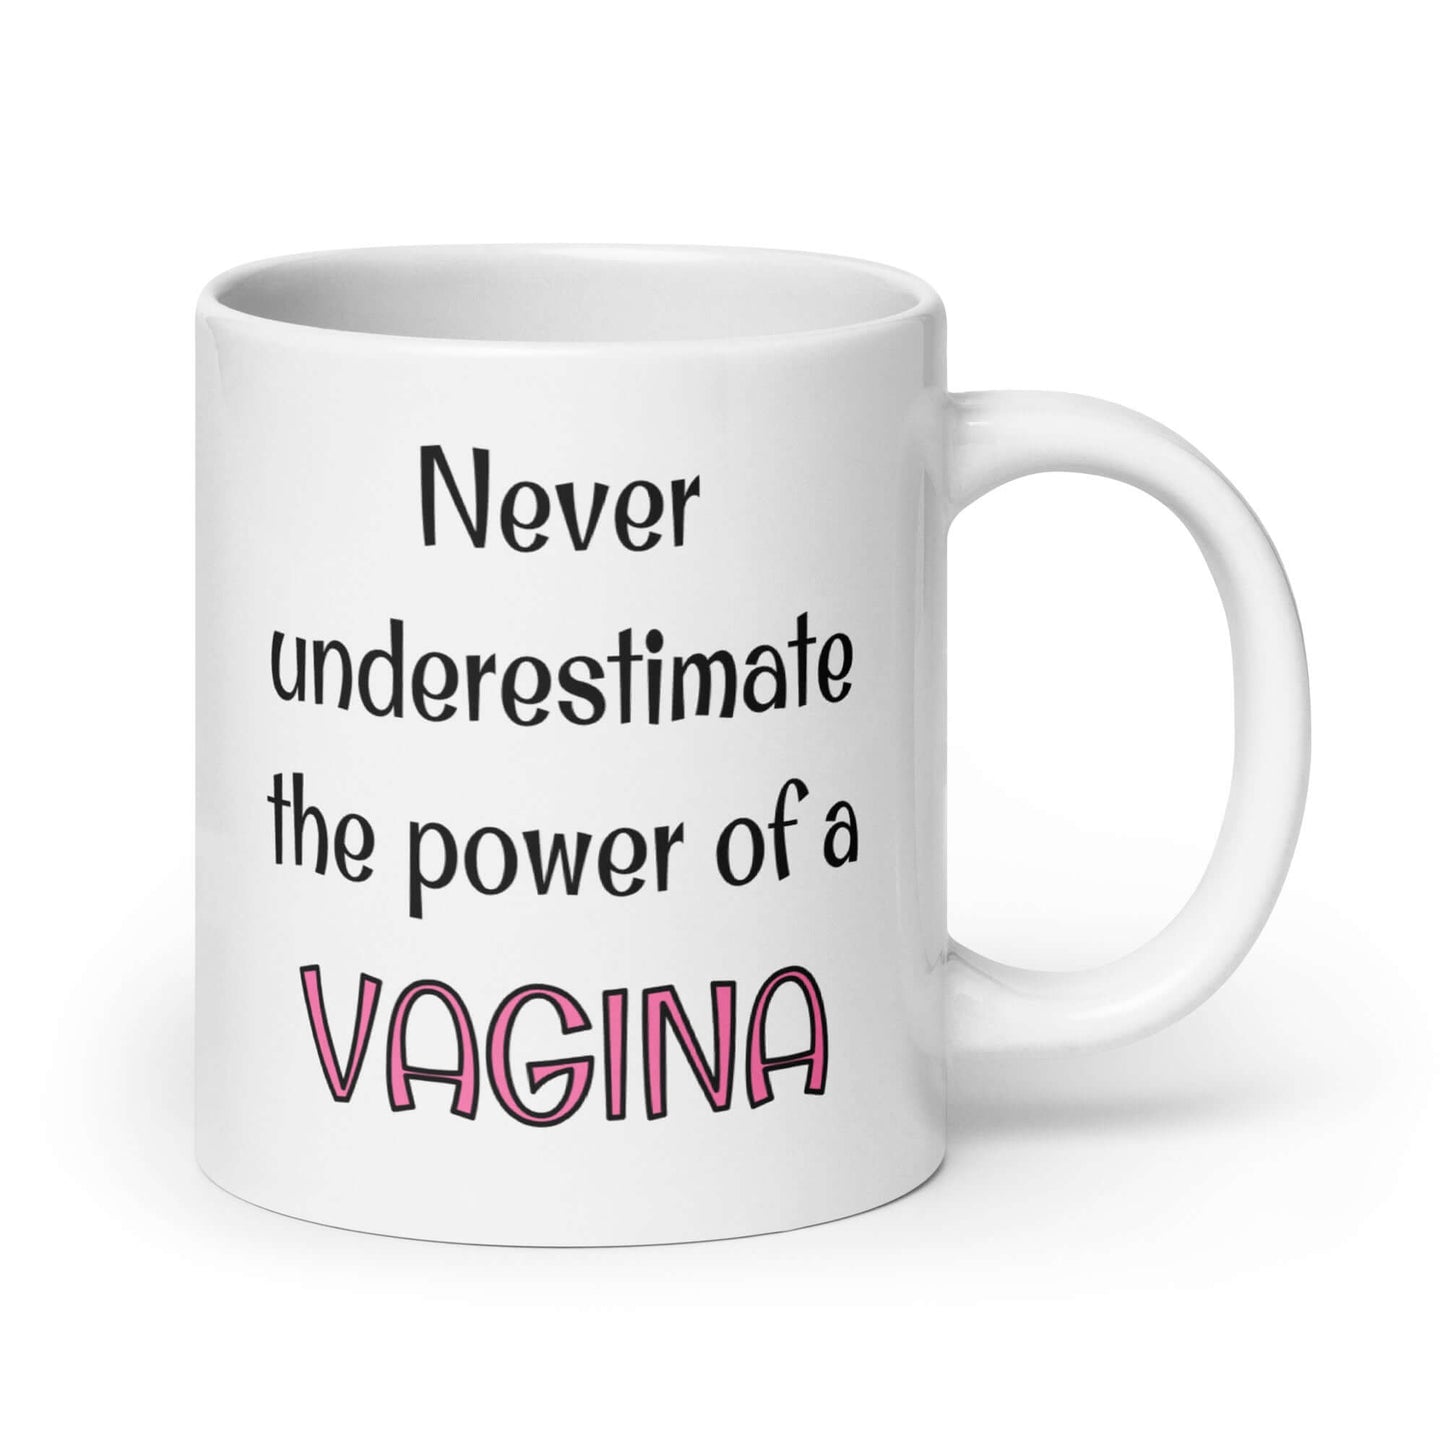 Vagina power mug